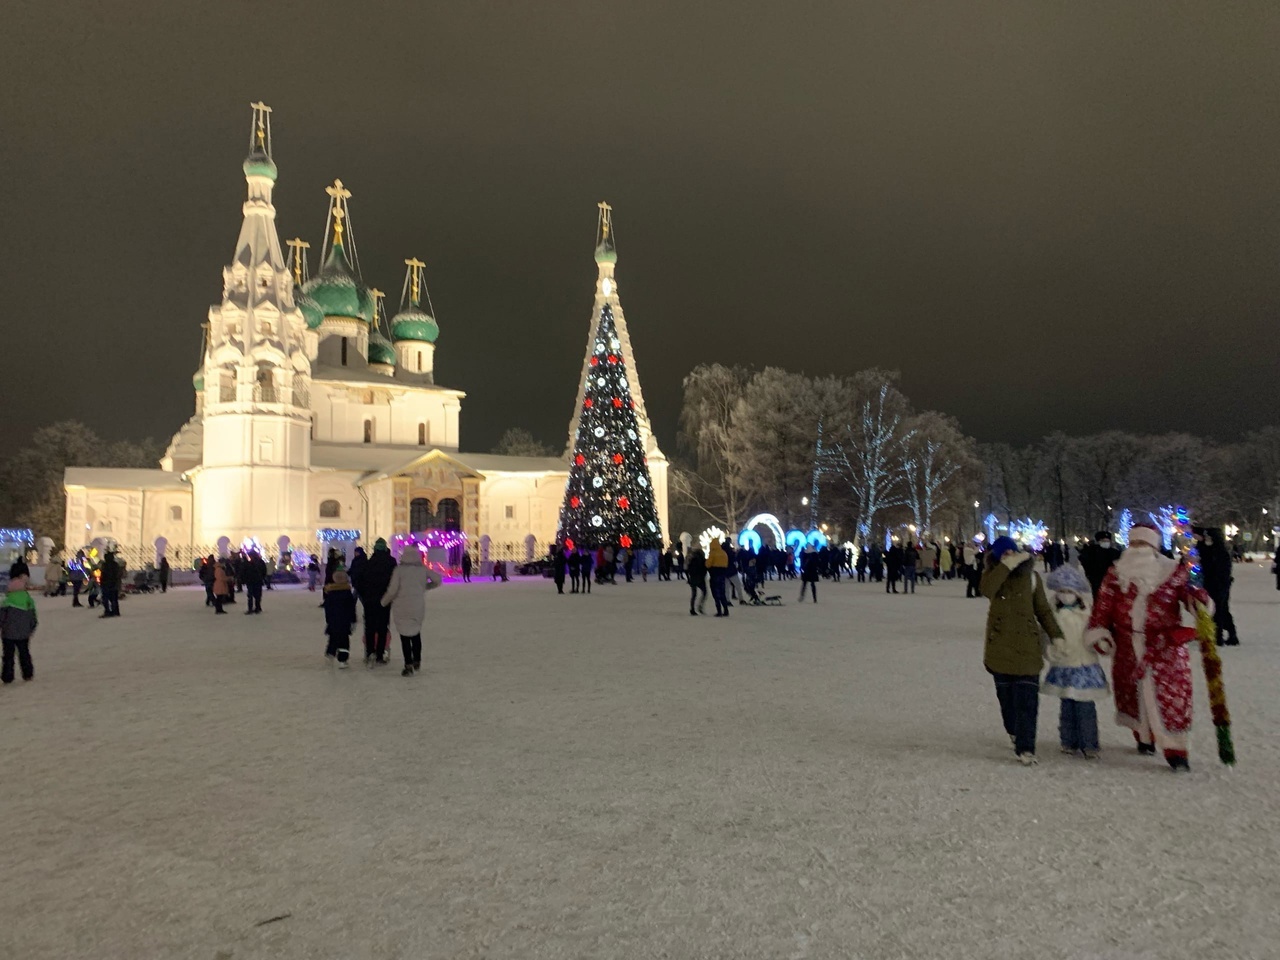 Ярославль укрепил лидерство среди городов «Золотого кольца» для отдыха на зимних каникулах